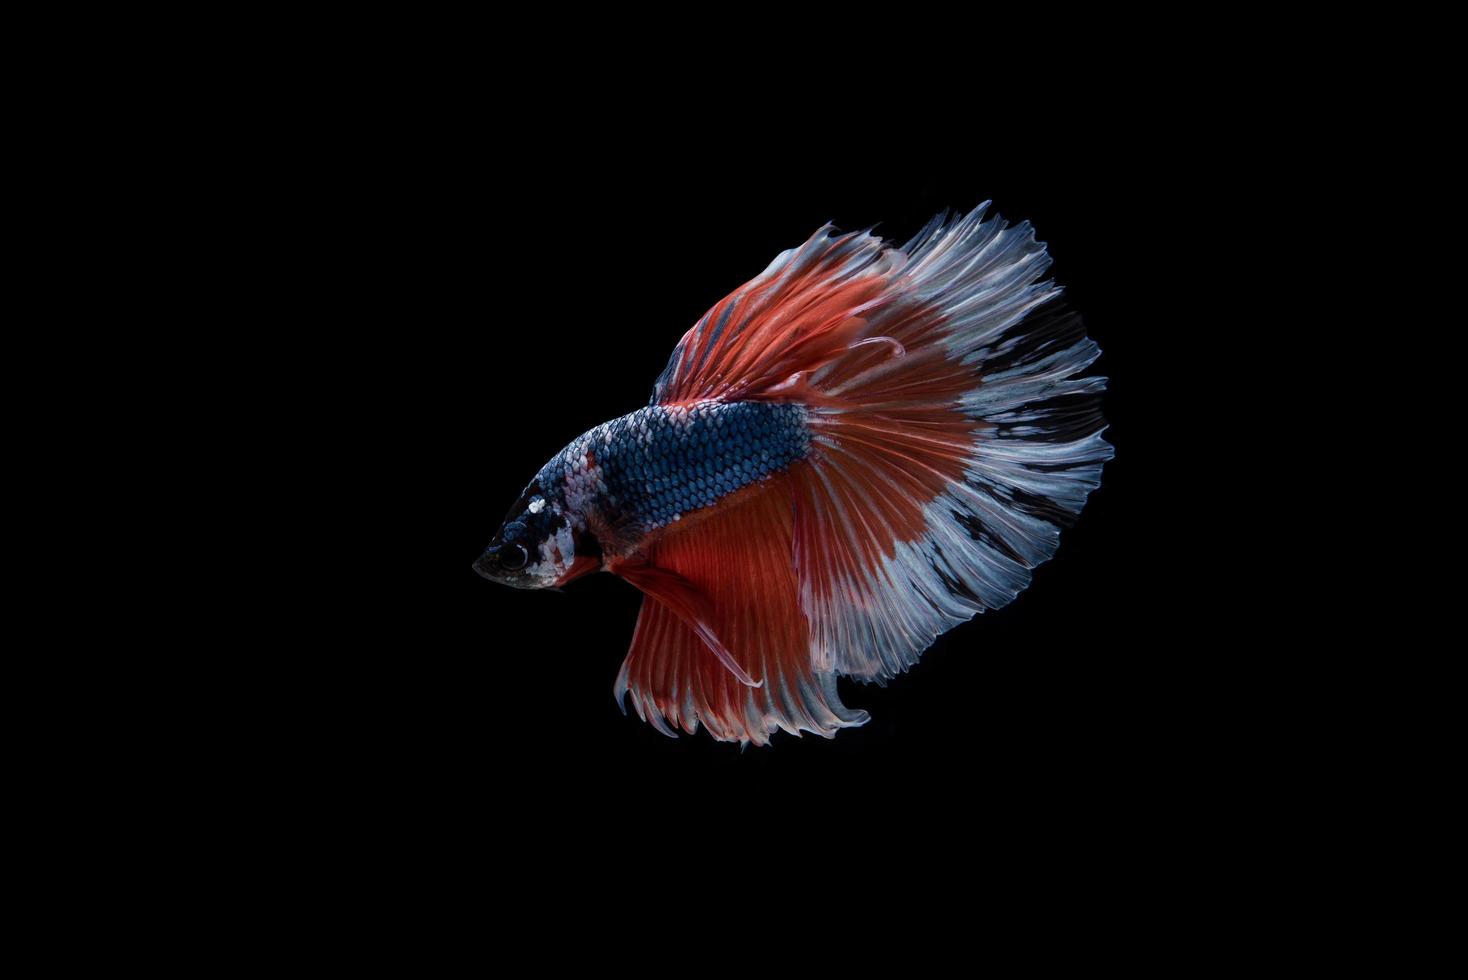 Hermoso colorido pez betta siamés foto